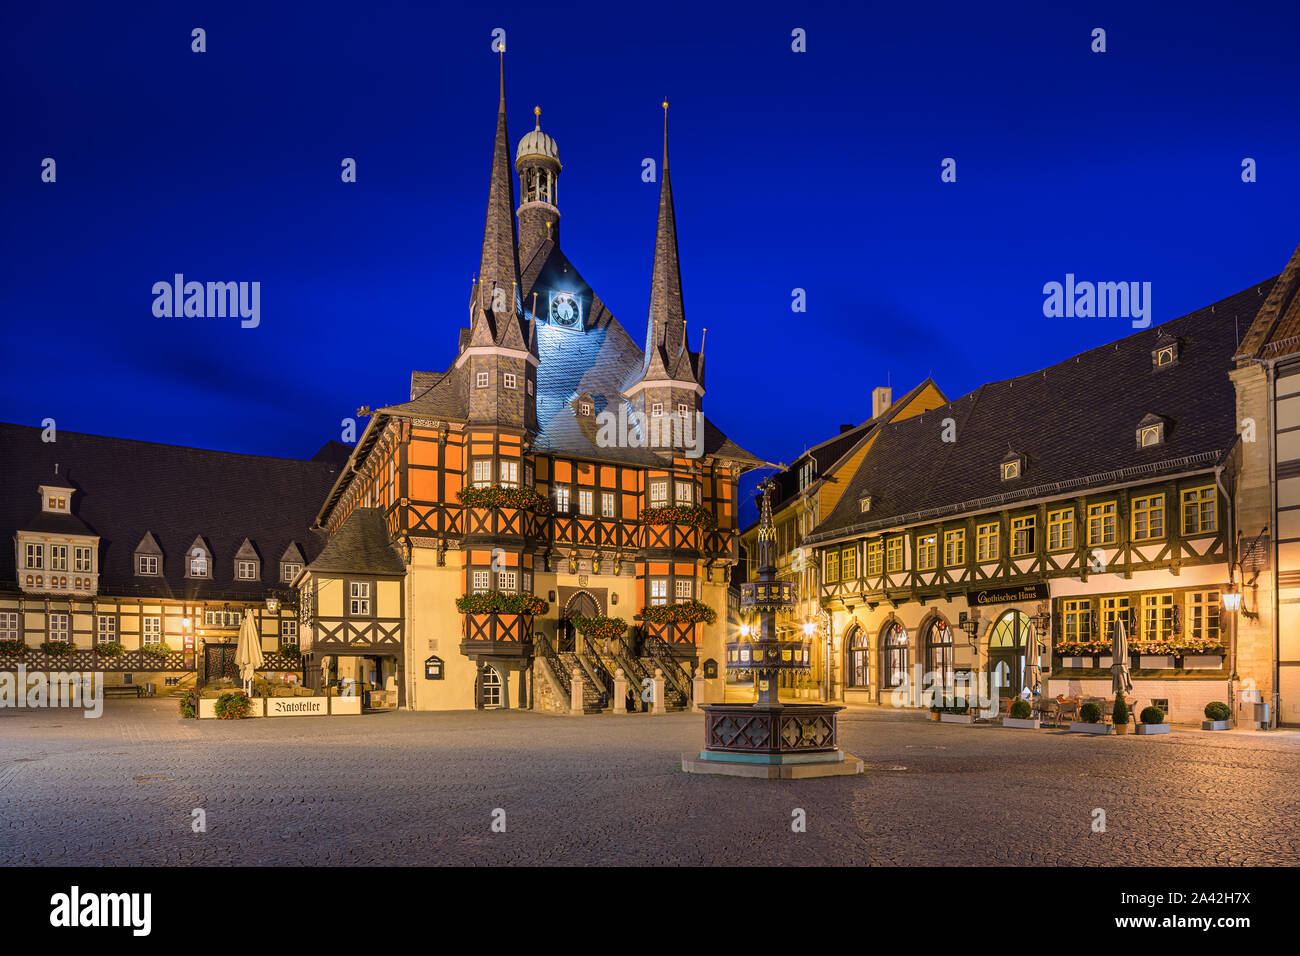 Das berühmte Rathaus in Wernigerode bei Sonnenaufgang. Wernigerode ist eine Stadt im Landkreis Harz, Sachsen-Anhalt, Deutschland. Wernigerode befindet sich southwe Stockfoto